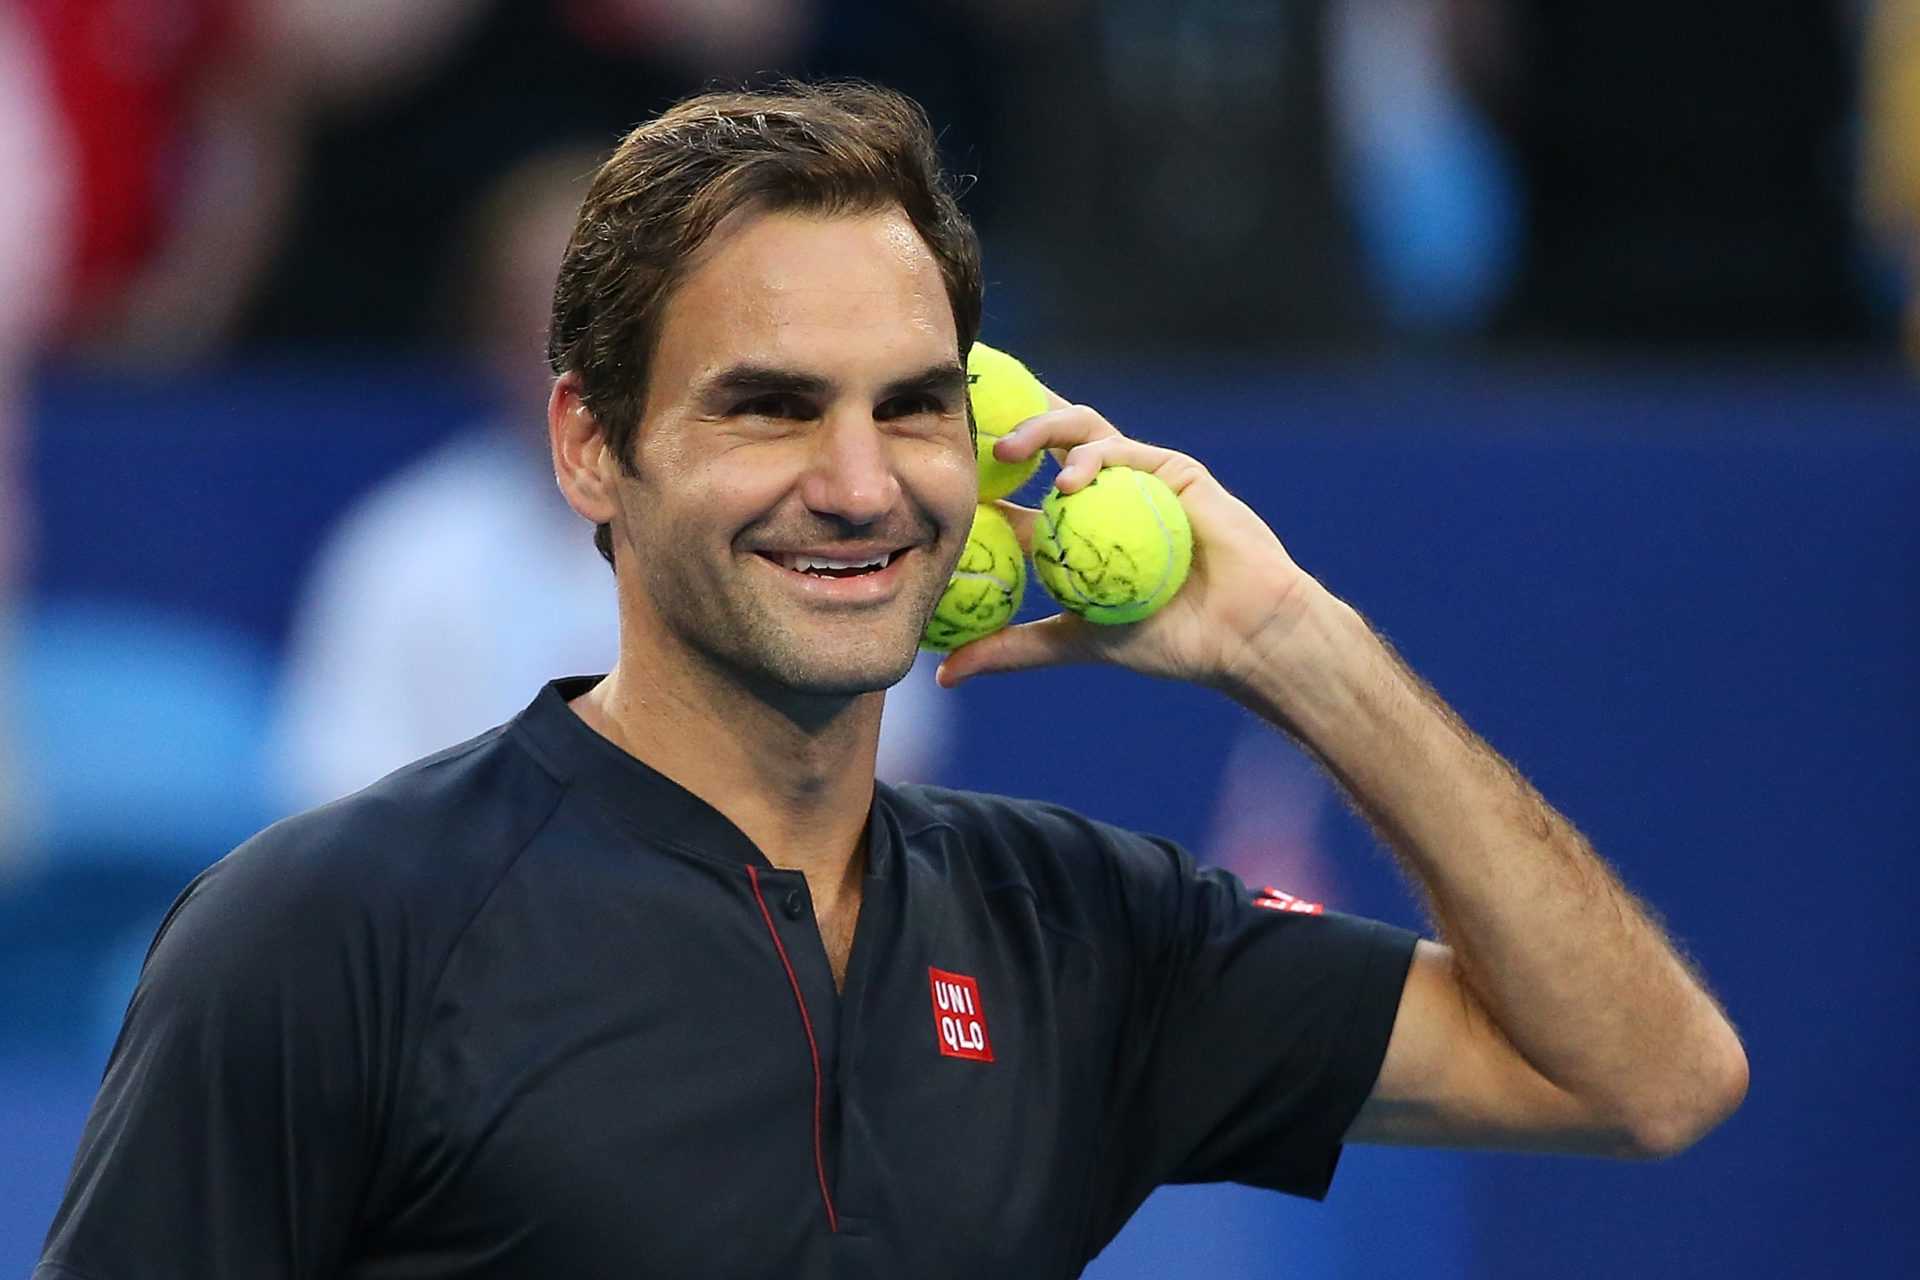 REGARDER: Quand Roger Federer portait un kilt contre Andy Murray